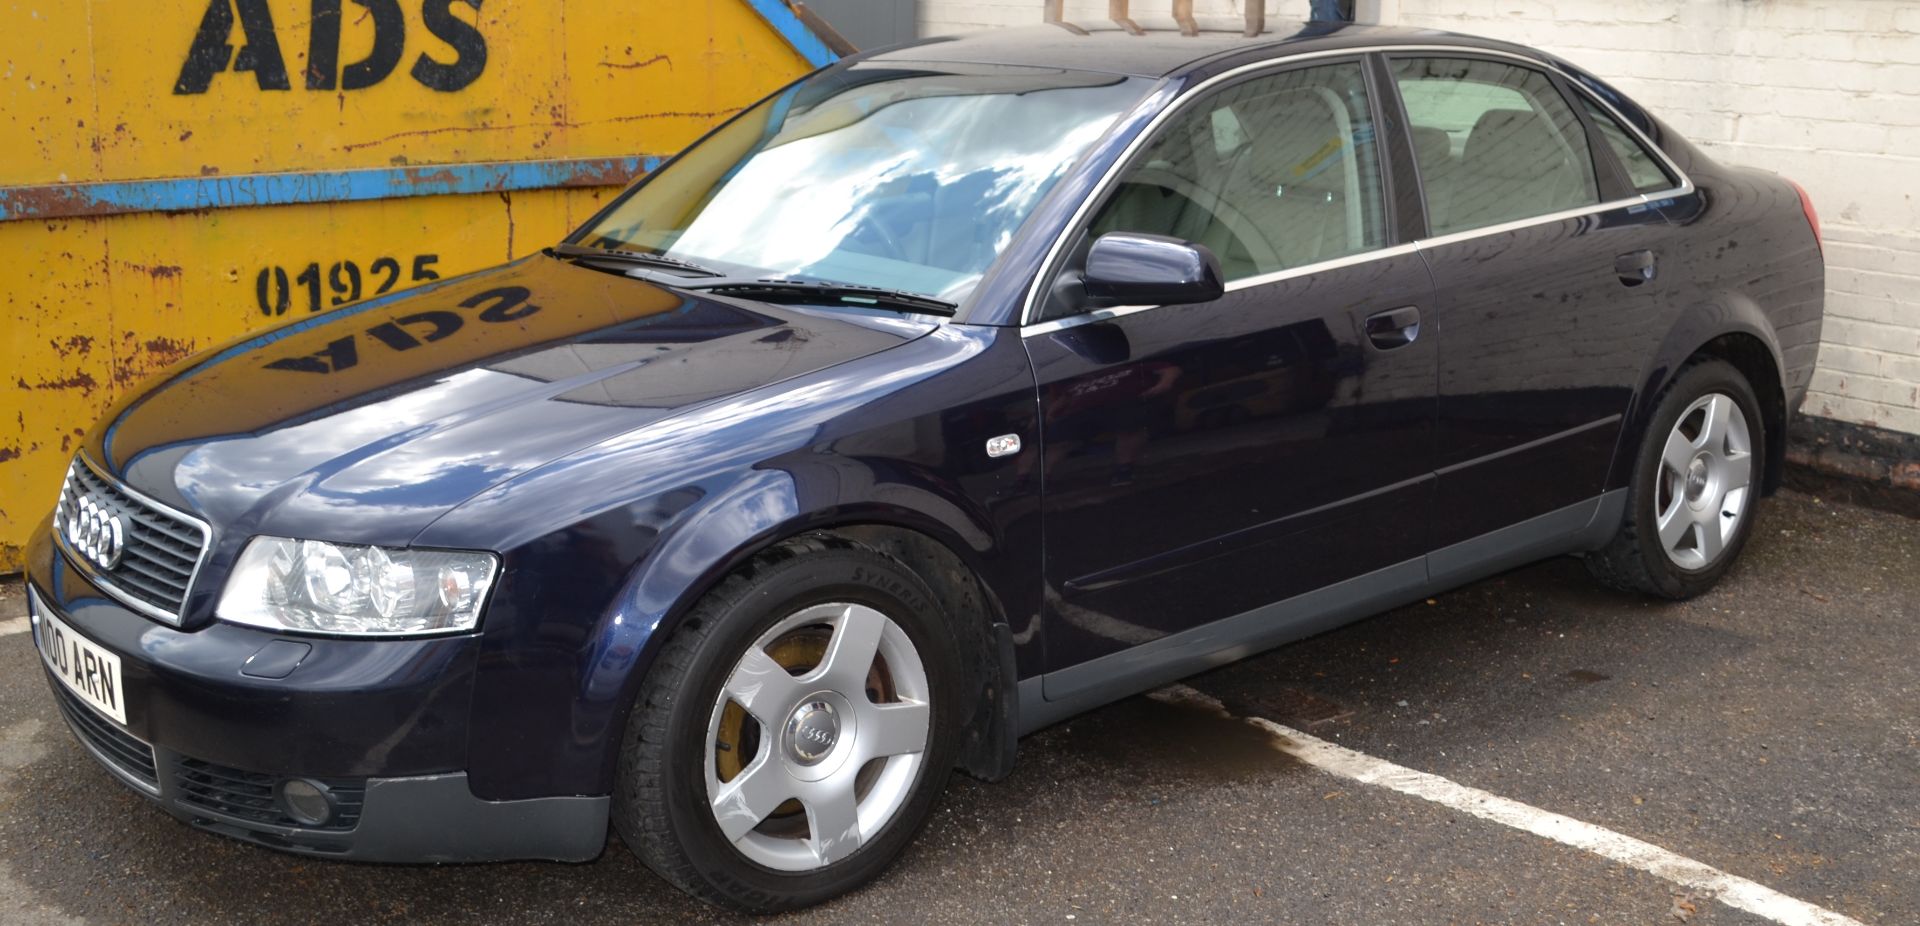 2001 Audi A4 SE Auto in Dark Blue 2.4L Petrol (Non Runner) - CL011 - Location: Altrincham WA14 - Image 3 of 13